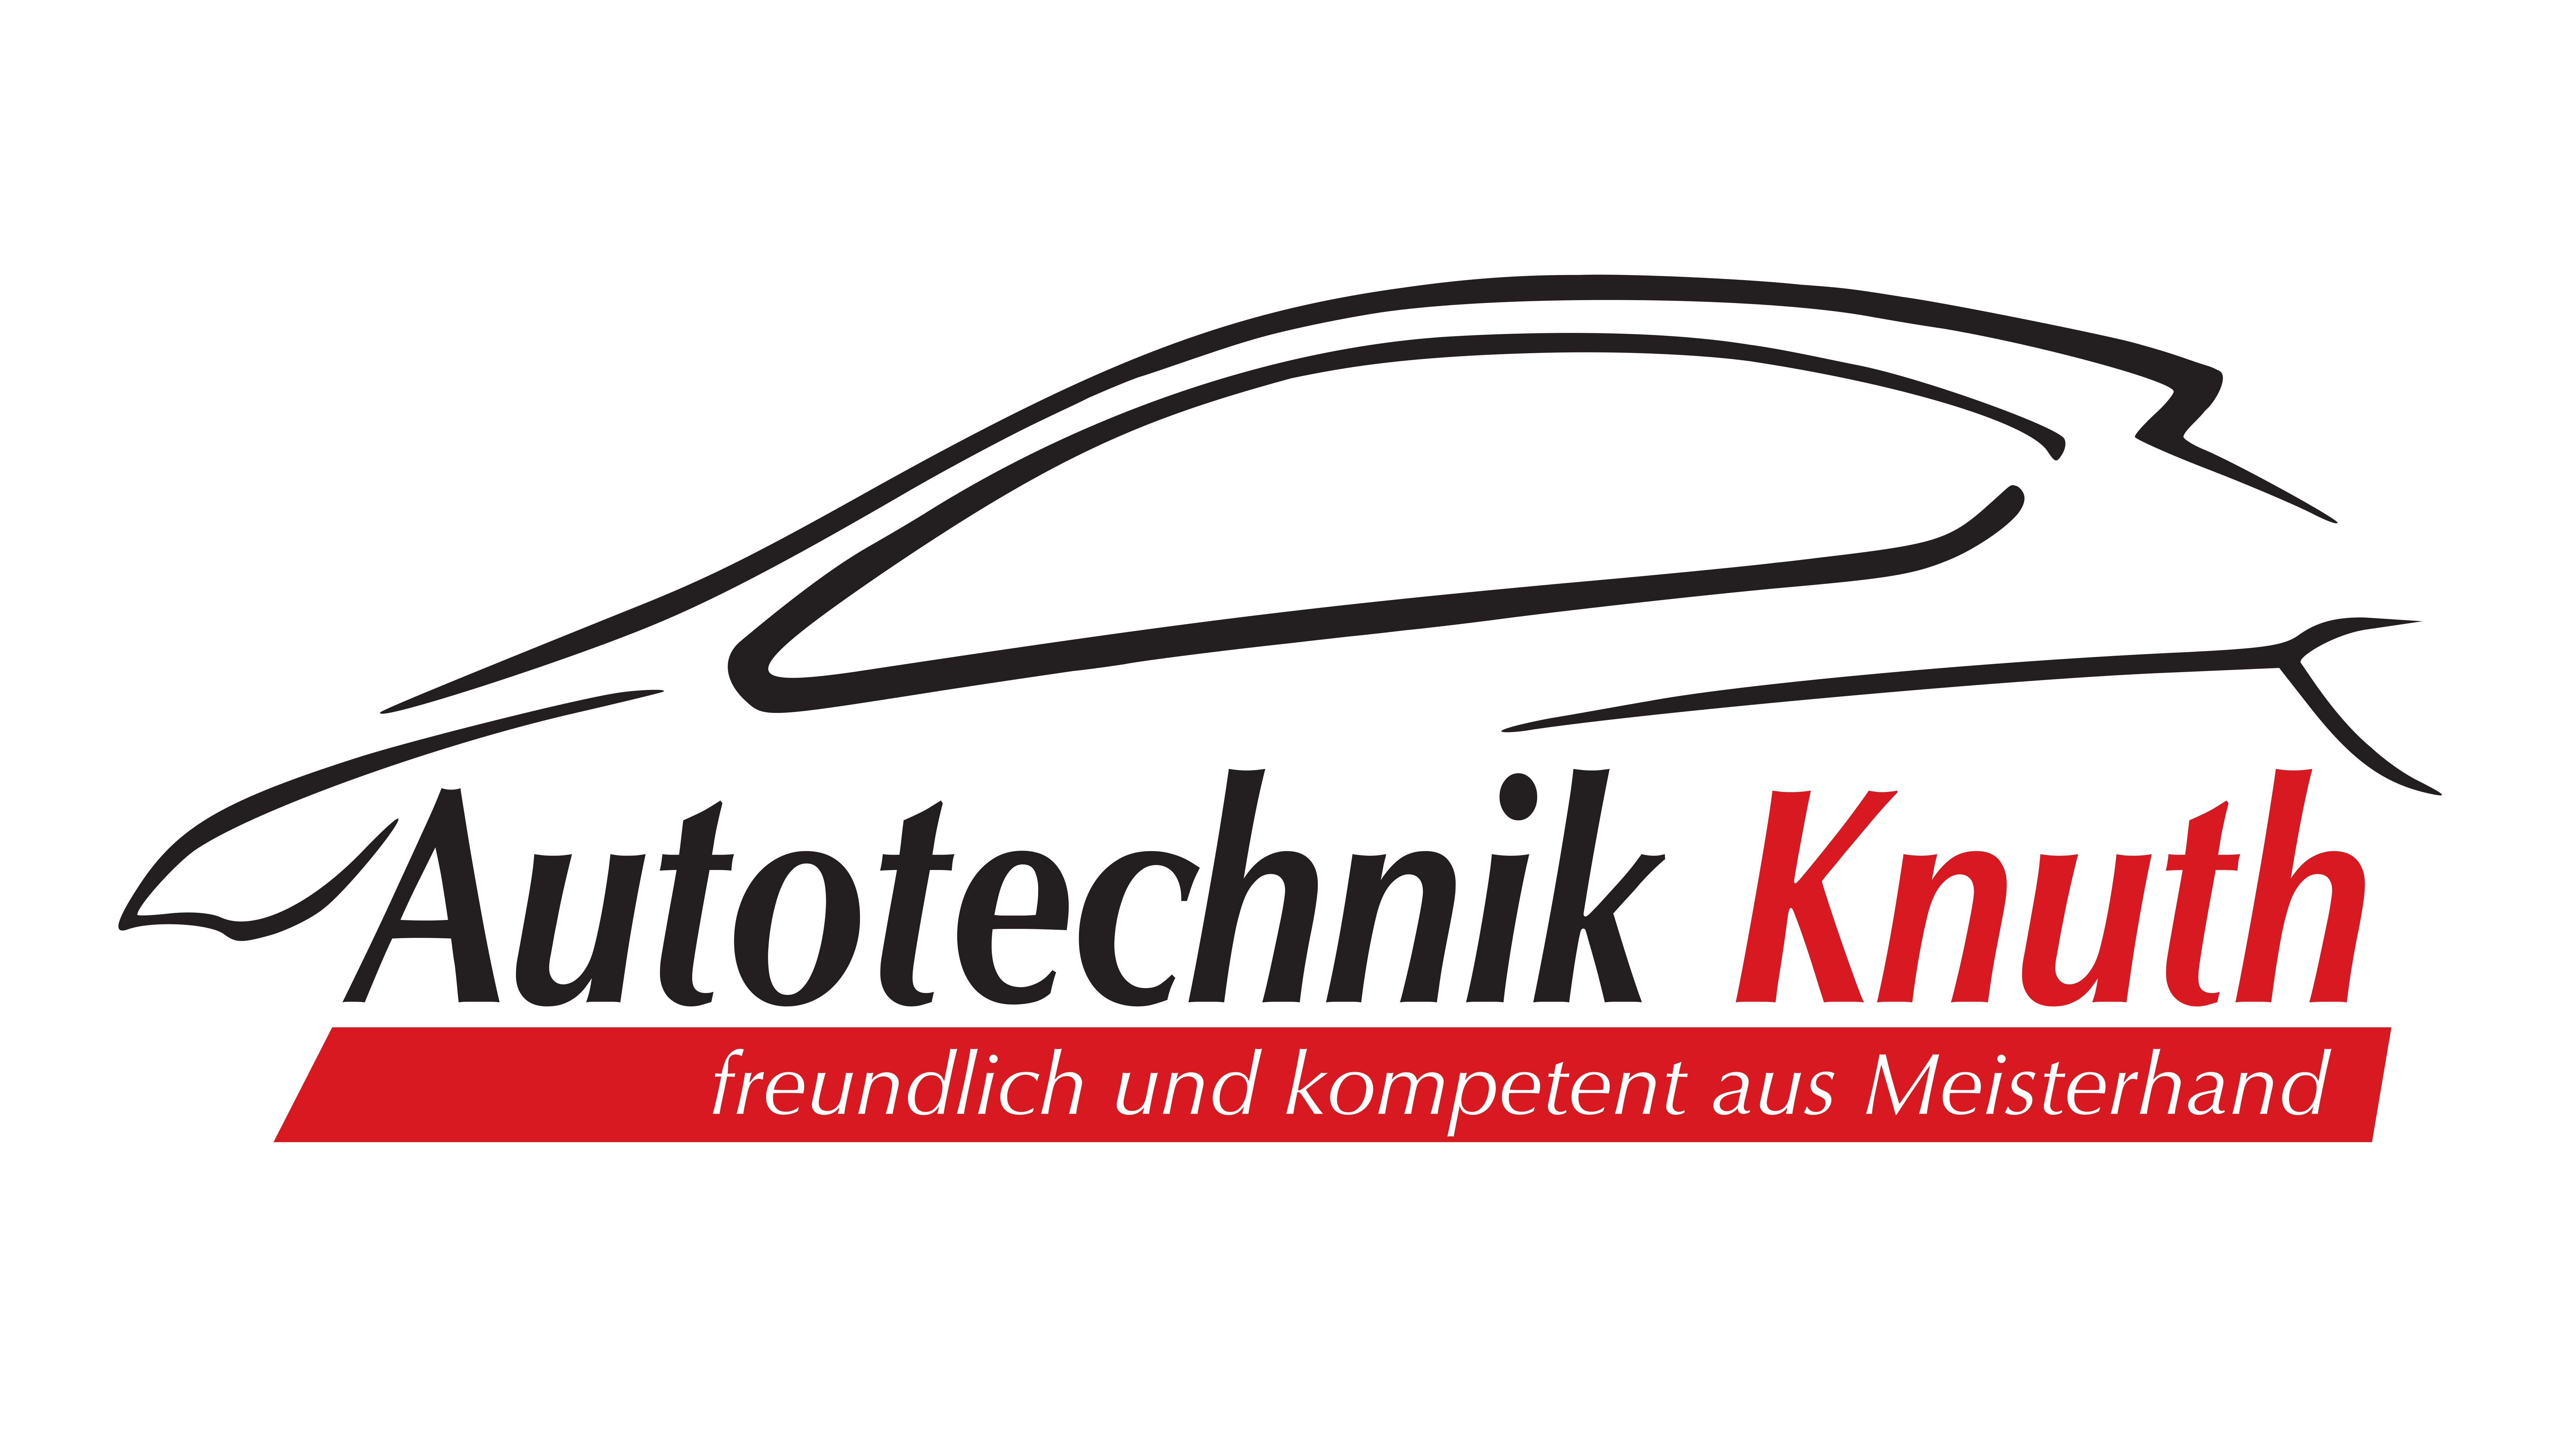 Autotechnik Knuth logo